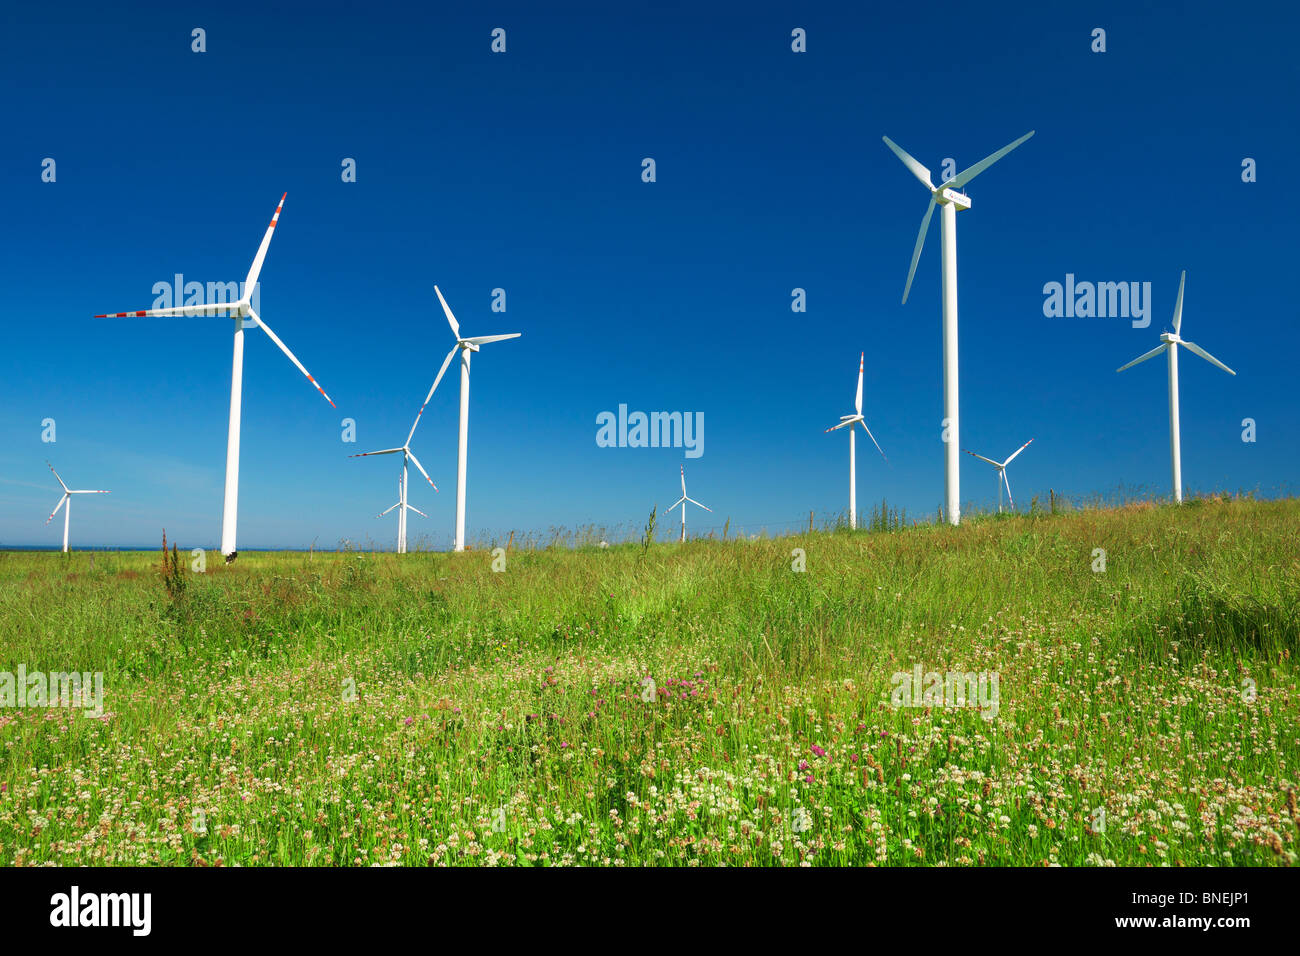 Wind turbine, wind farm, Pomerania, Poland Stock Photo